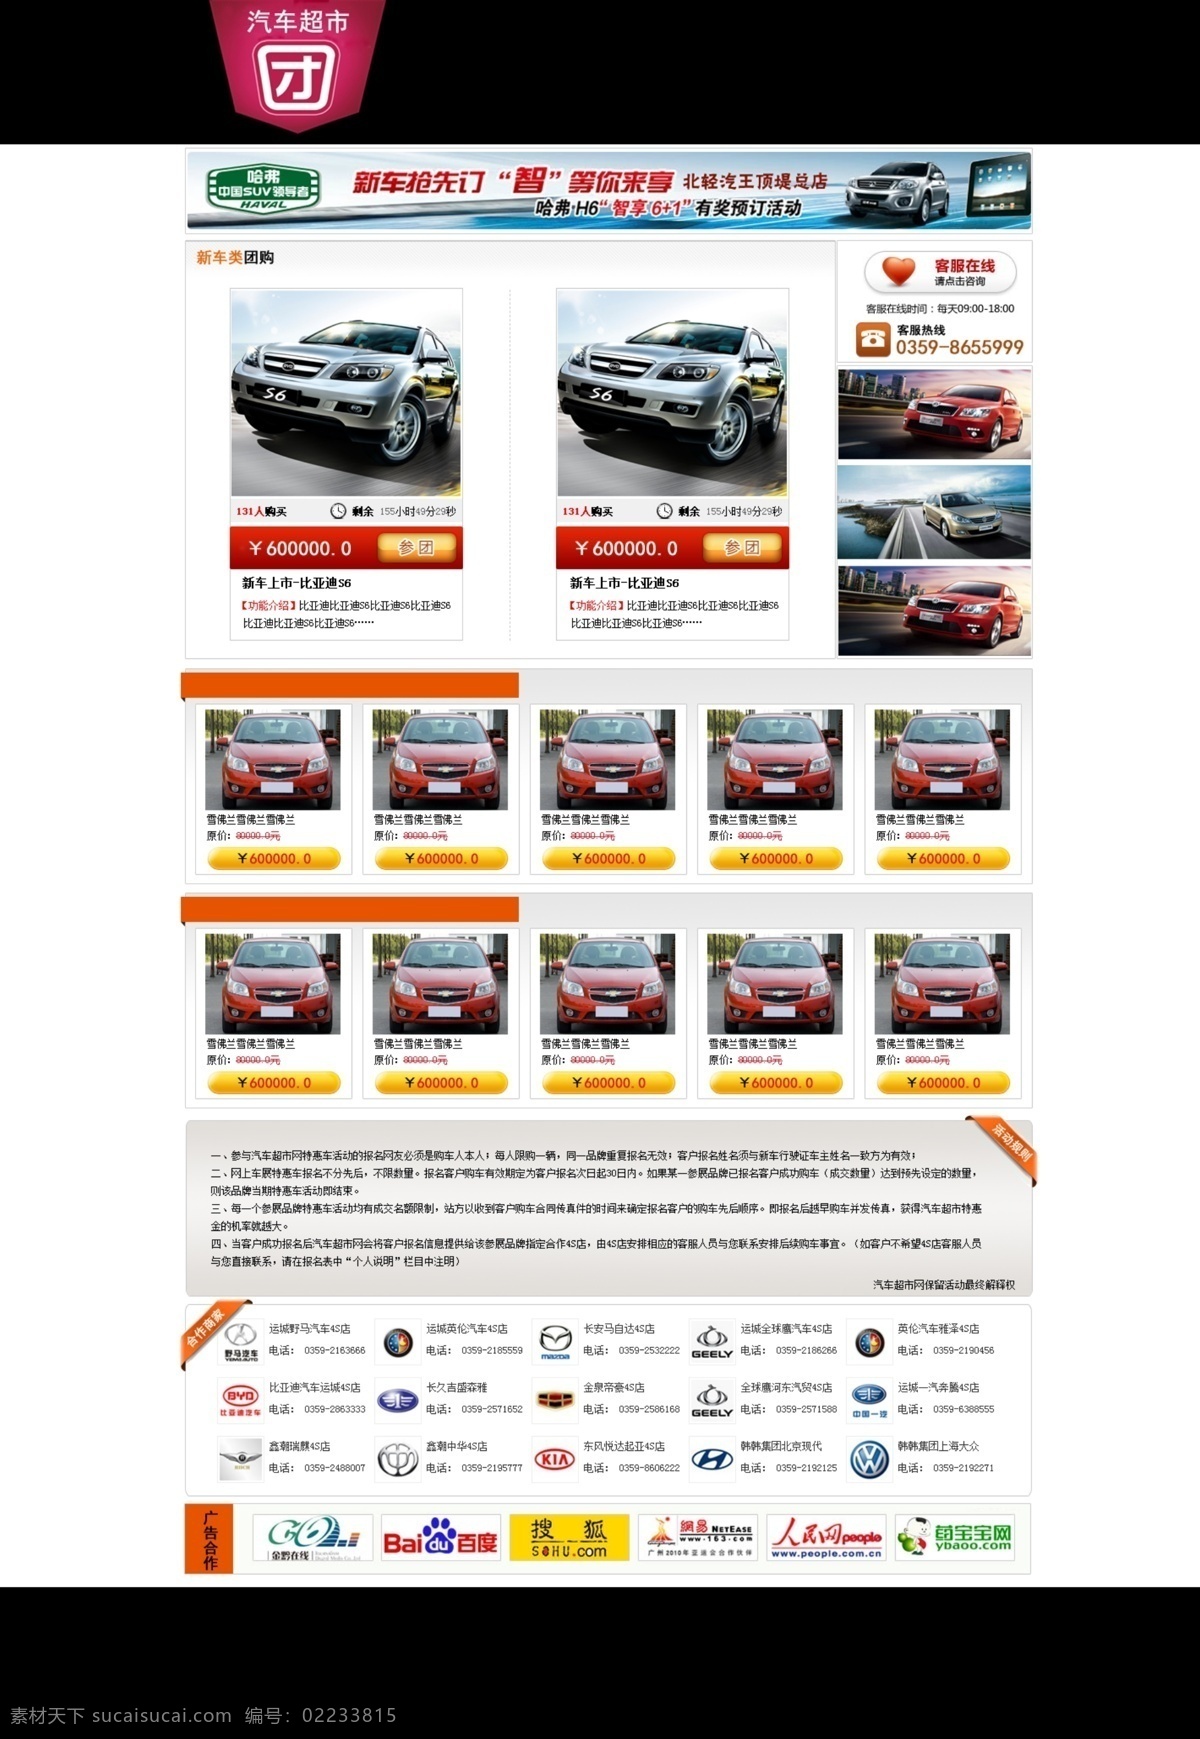 分层 模版 汽车 网页 网页模板 网页设计 网站 网站设计 网 汽车网 源文件 车行网 中文模版 网页素材